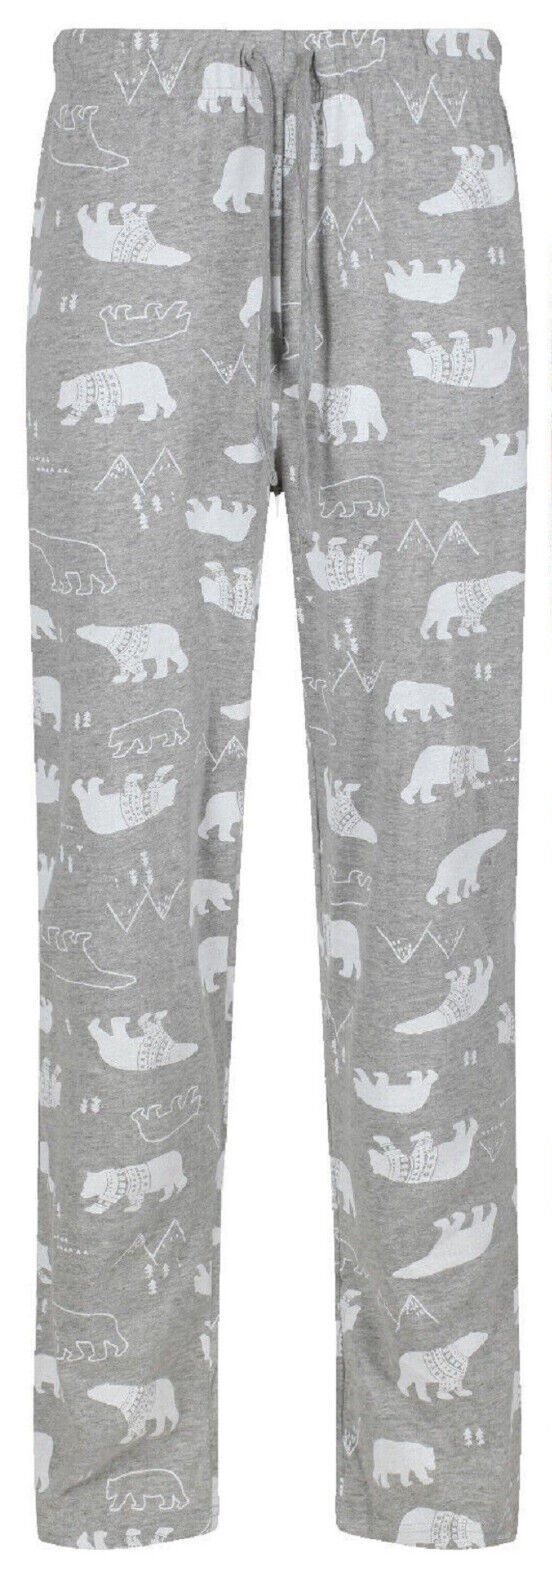 Pánské domácí kalhoty Lední medvěd XL